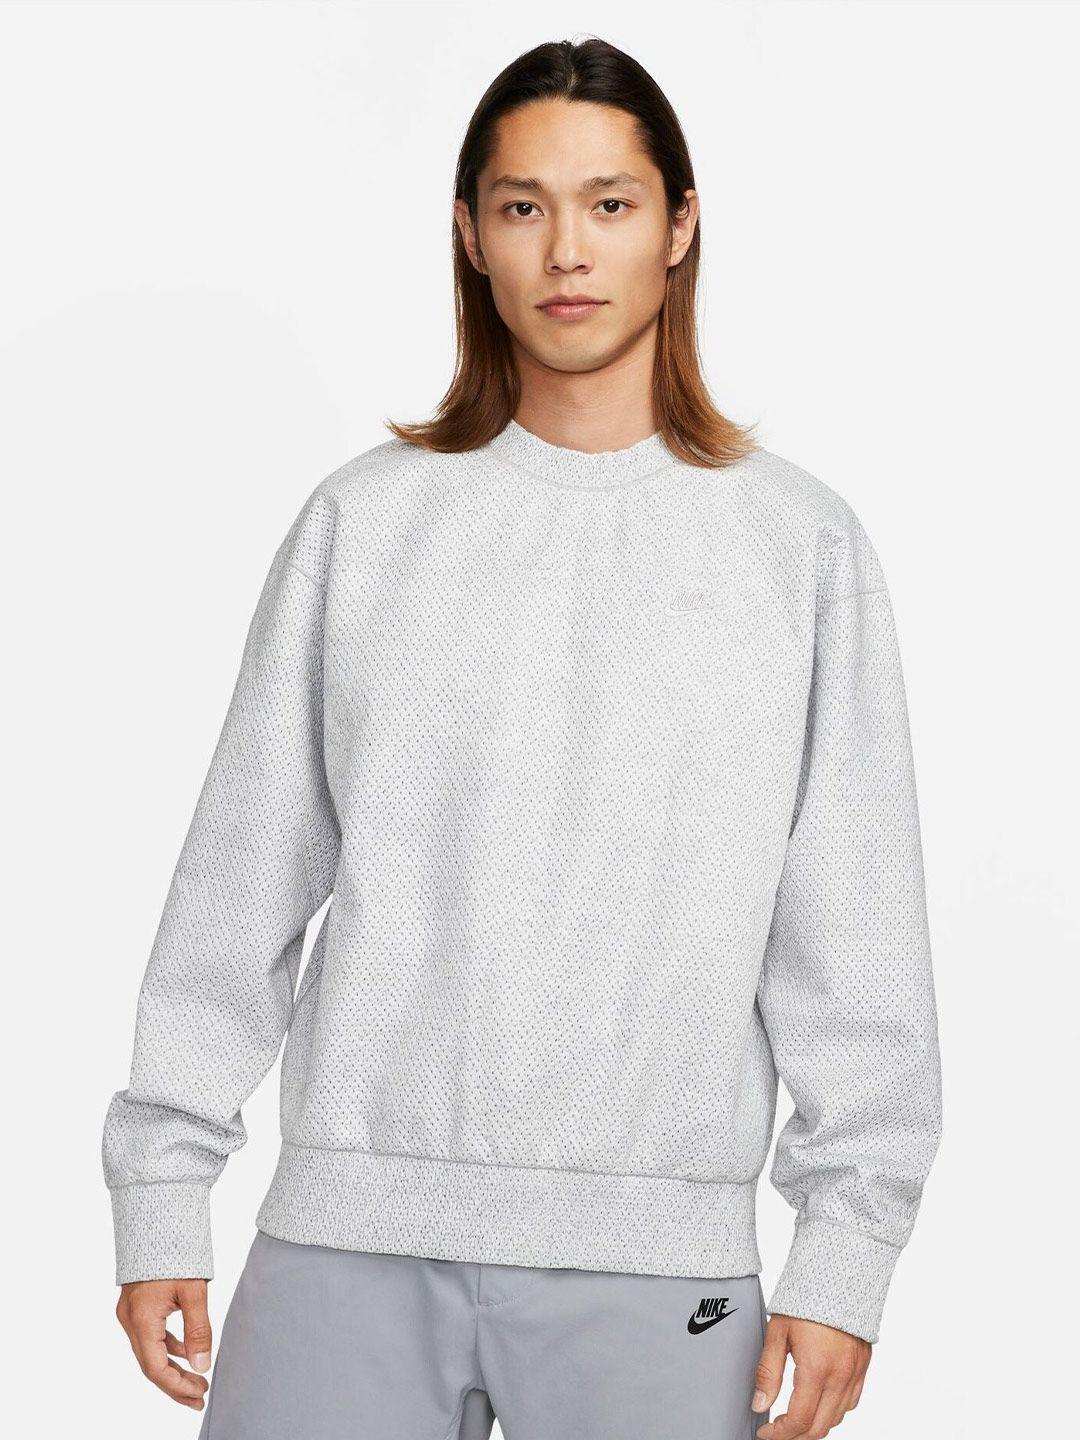 nike self design long sleeves sweatshirt